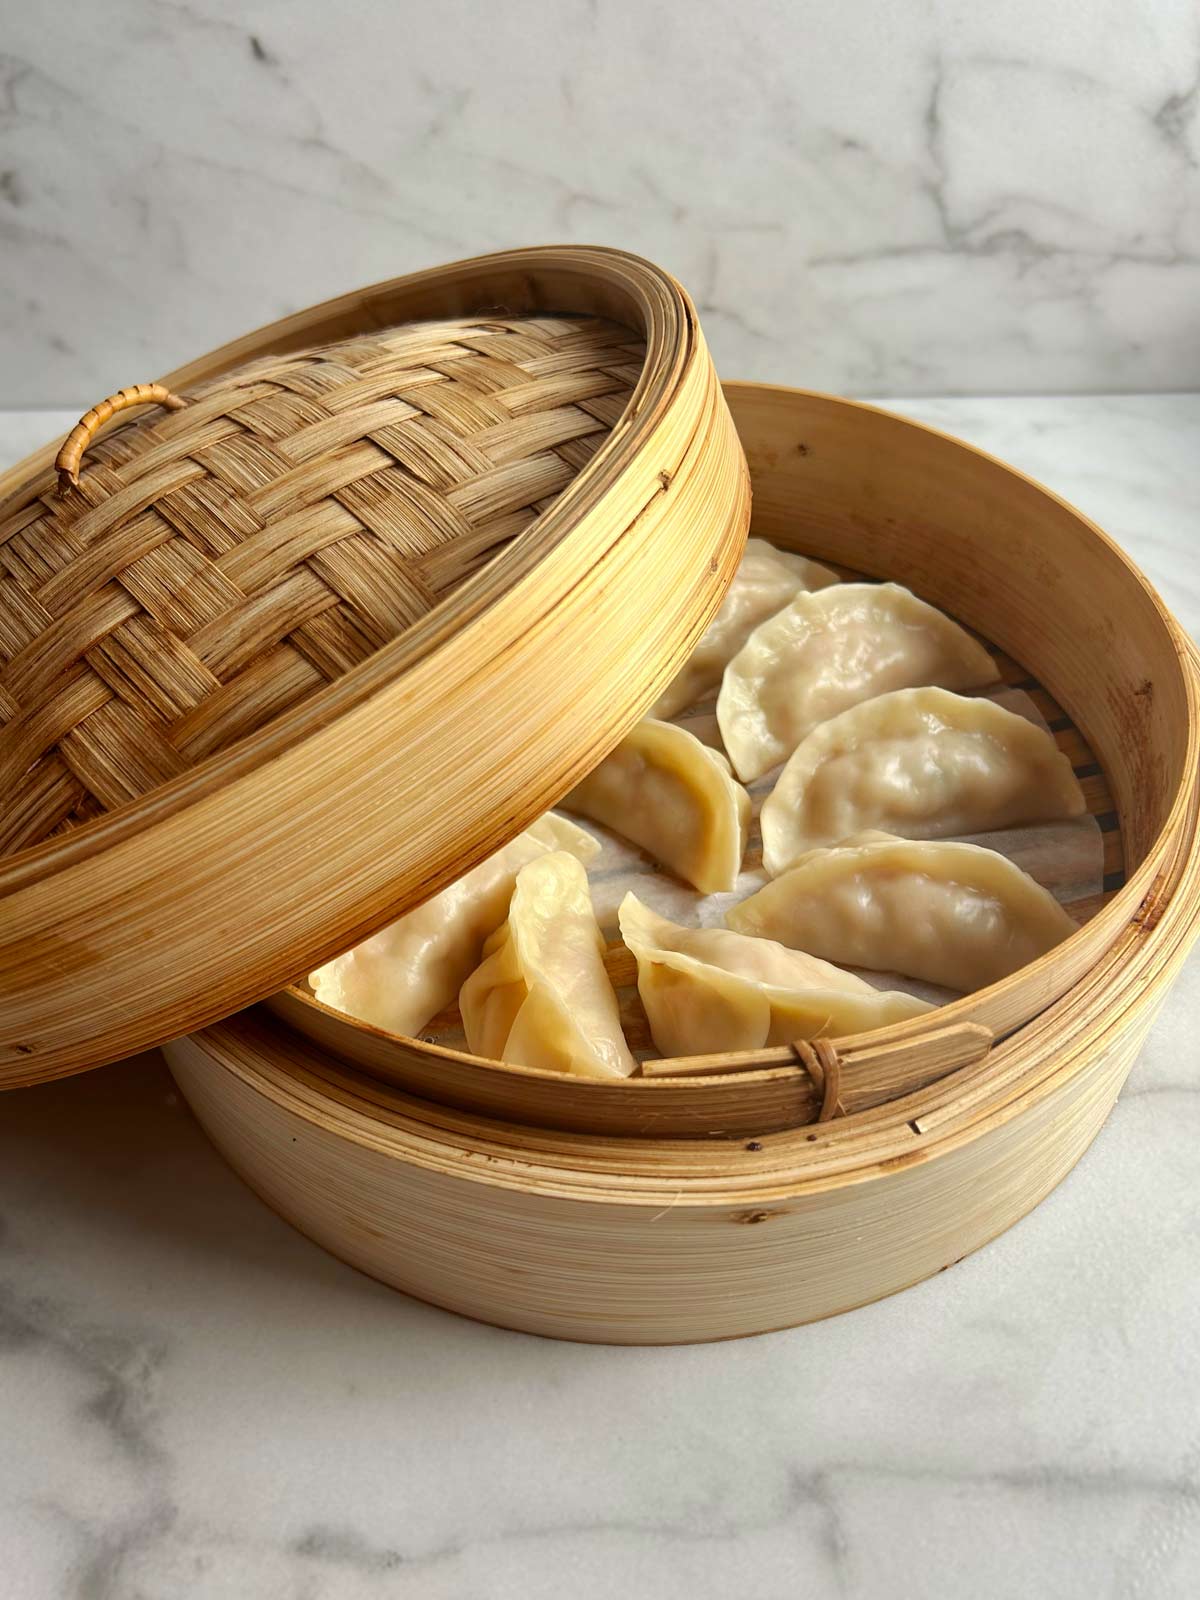 https://feedgrump.com/wp-content/uploads/2023/10/bamboo-steamer-recipes-dumplings.jpg